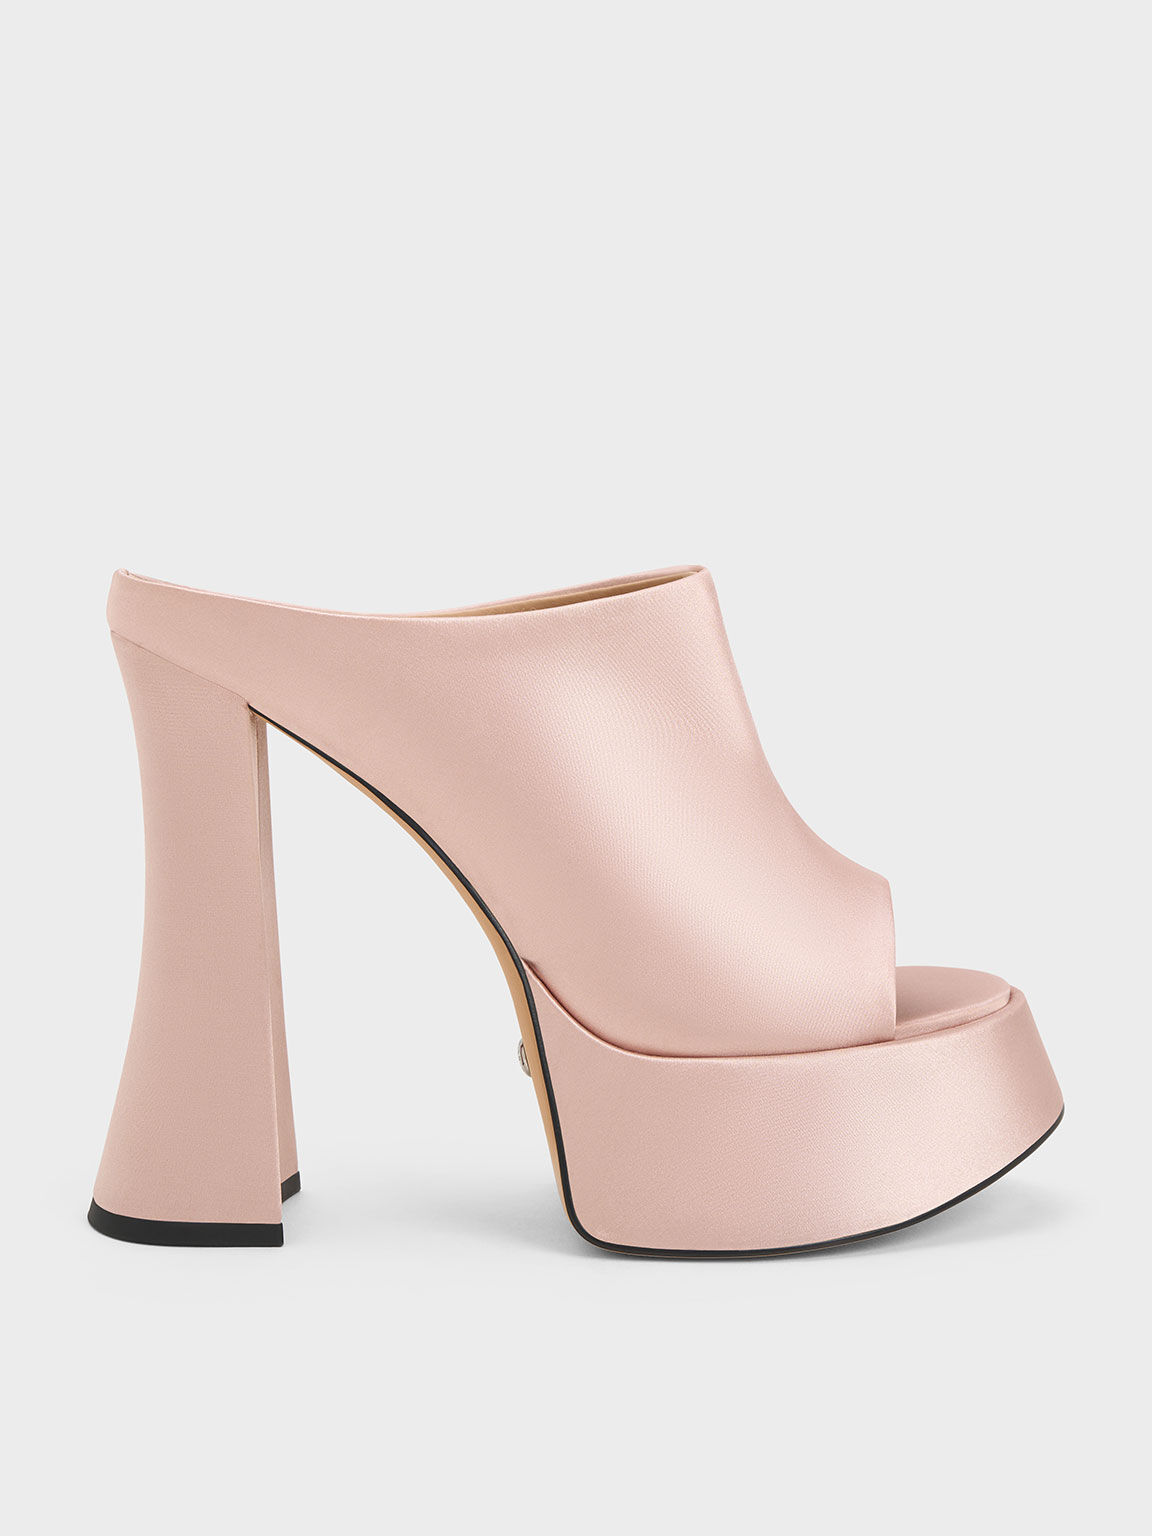 ZAGUAR SILVER Platform Heels | Buy Women's HEELS Online | Novo Shoes NZ